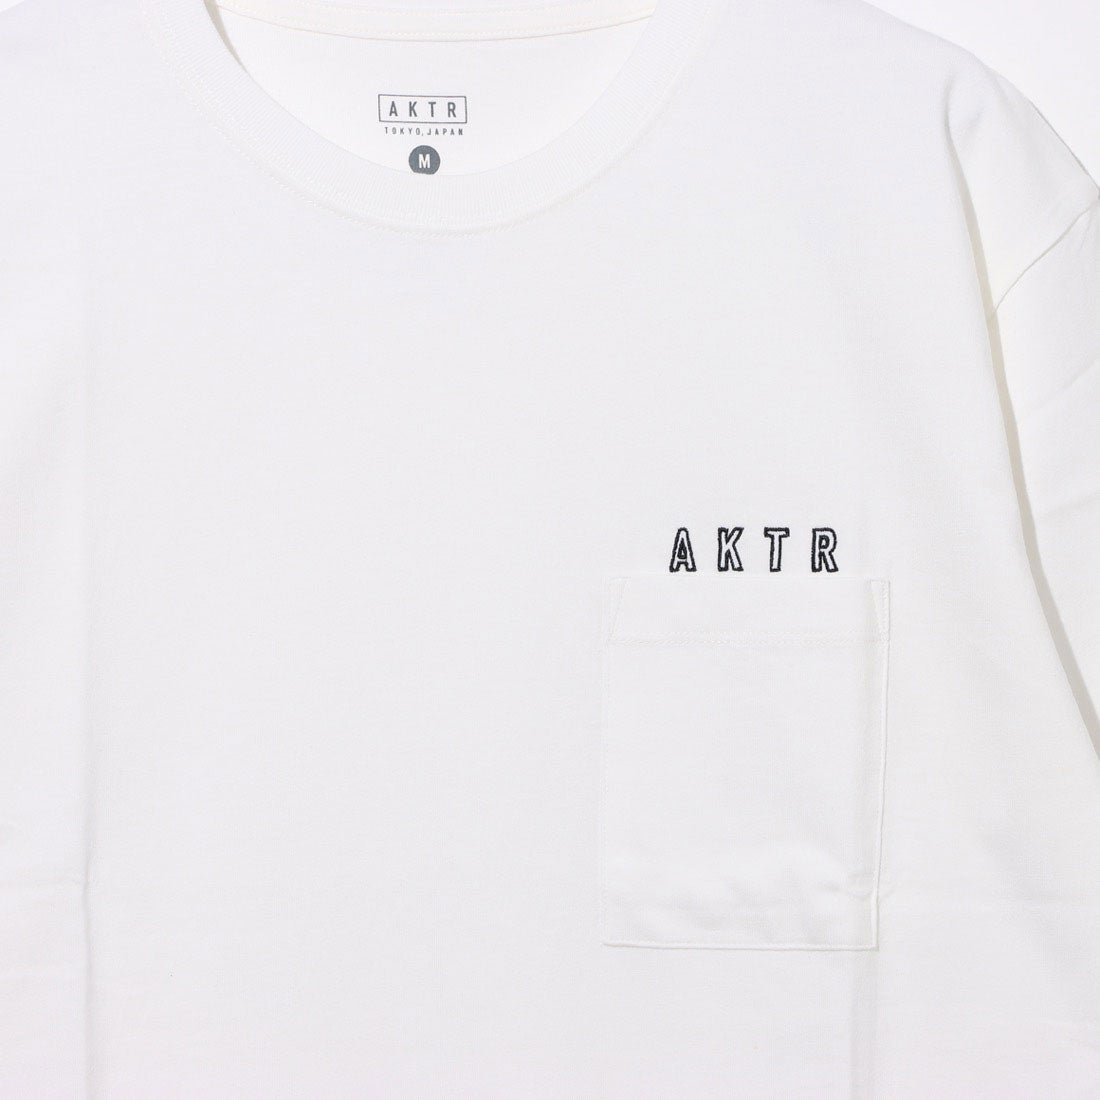 1050円 【SEAL限定商品】 XL アクター AKTR 半袖Tシャツ